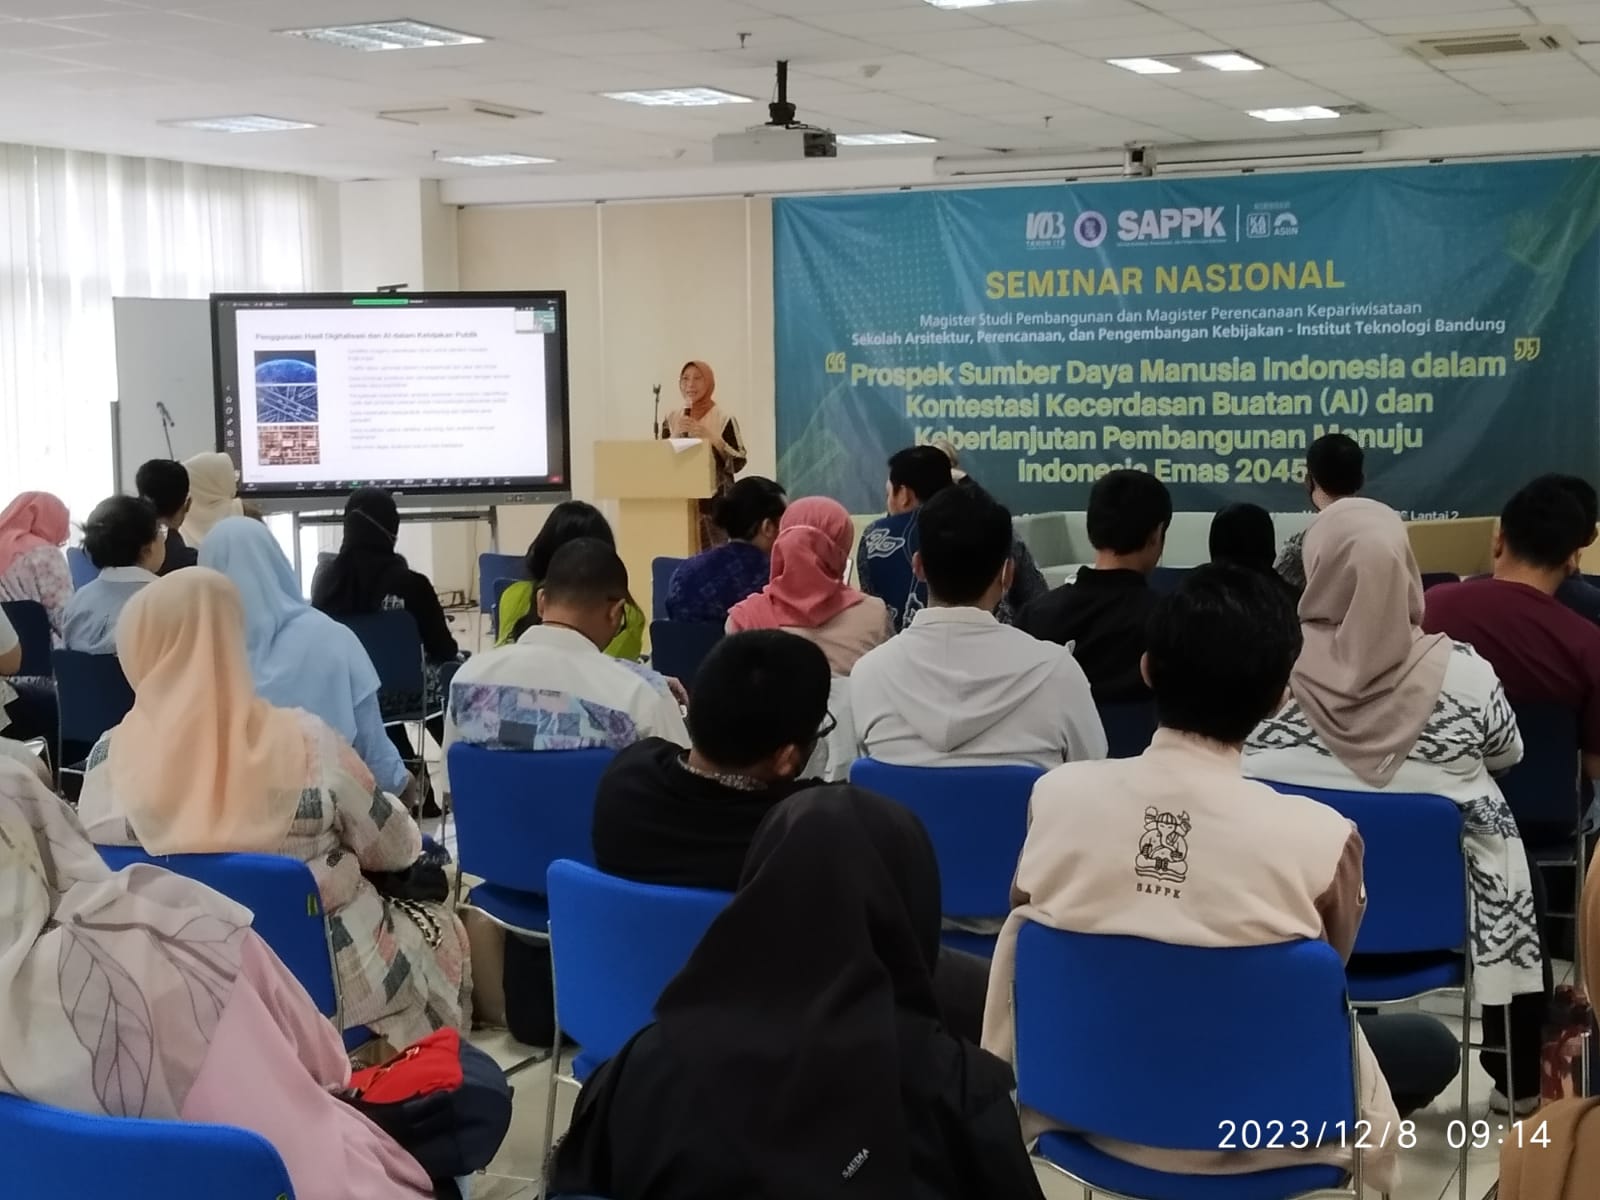 Seminar Nasional: “Prospek Sumber Daya Manusia Indonesia Dalam Kontestasi Kecerdasan Buatan (AI) dan Keberlanjutan Pembangunan Menuju Indonesia Emas 2045″